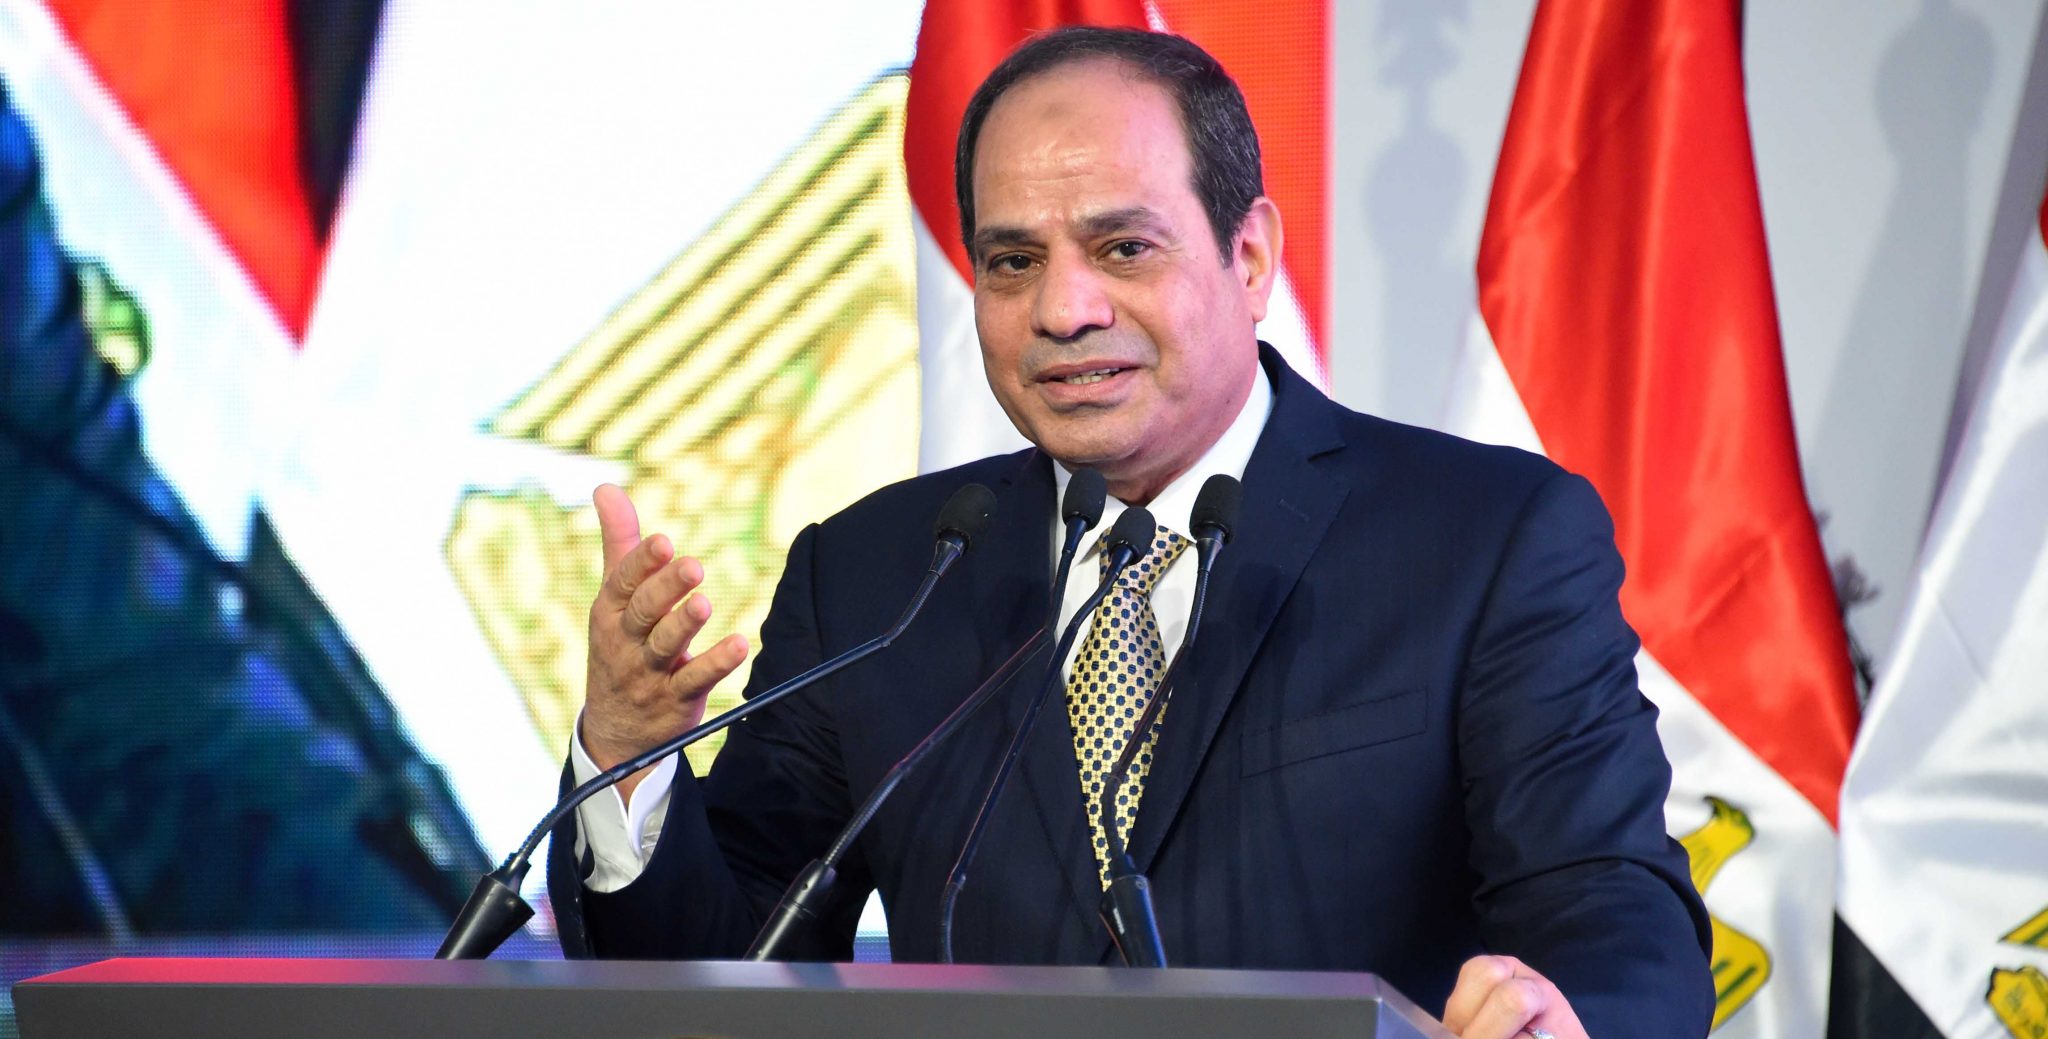   الرئيس يكلف «العربية للتصنيع» بضرورة تعزيز التعاون مع الدول الأجنبية والإفريقية